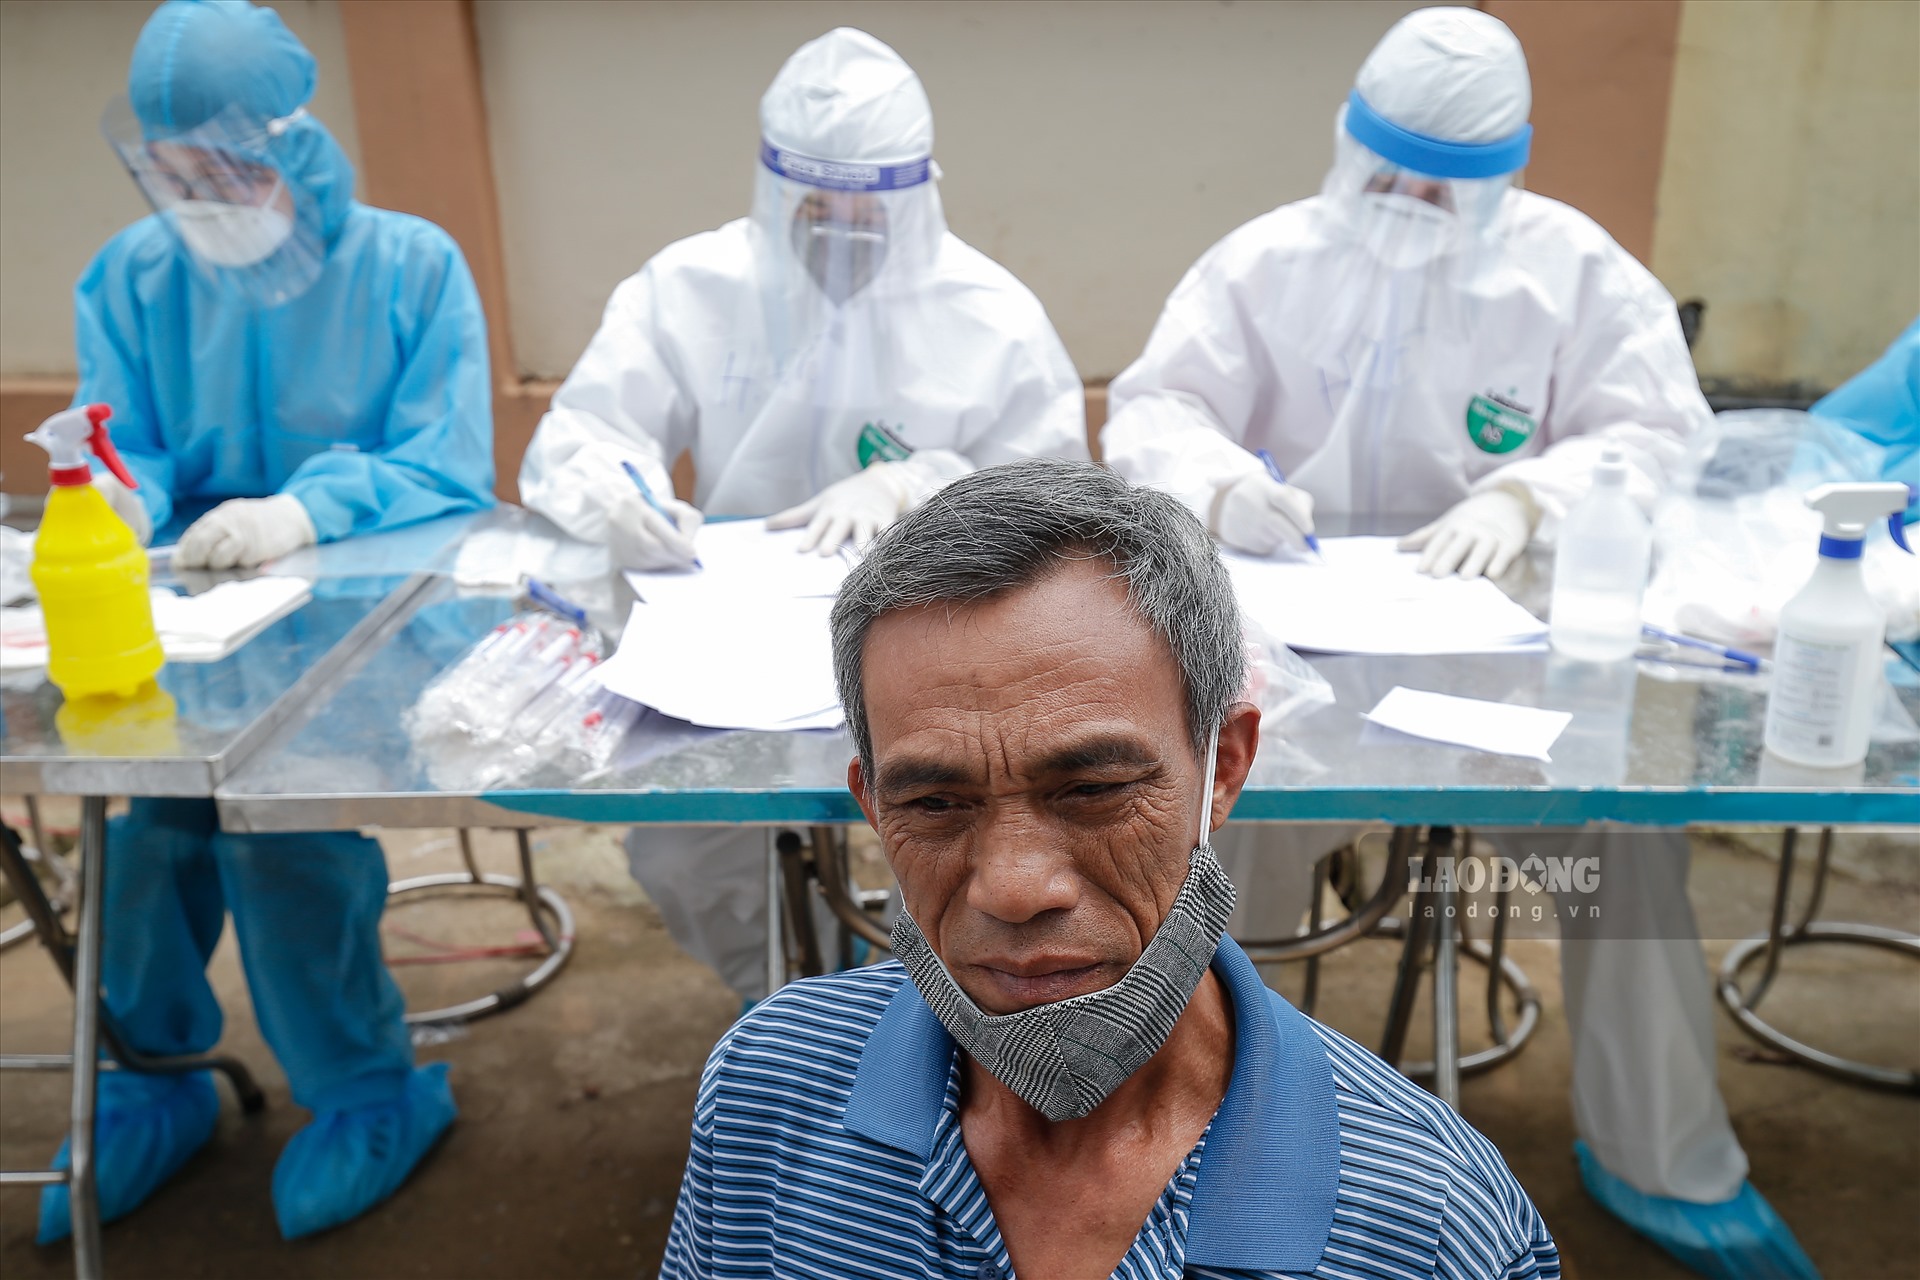 Trước đó, tối 9.4, Vào hôm qua 9/4, một số hộ dân ở thôn Hạ Lôi cũng đã được lấy mẫu bệnh phẩm. Trong ngày đầu tiên, việc lấy mẫu kéo dài đến 23h30 với sự tham gia của hơn 200 nhân viên từ Trung tâm kiểm soát bệnh tật Hà Nội (CDC) và một số quận, huyện